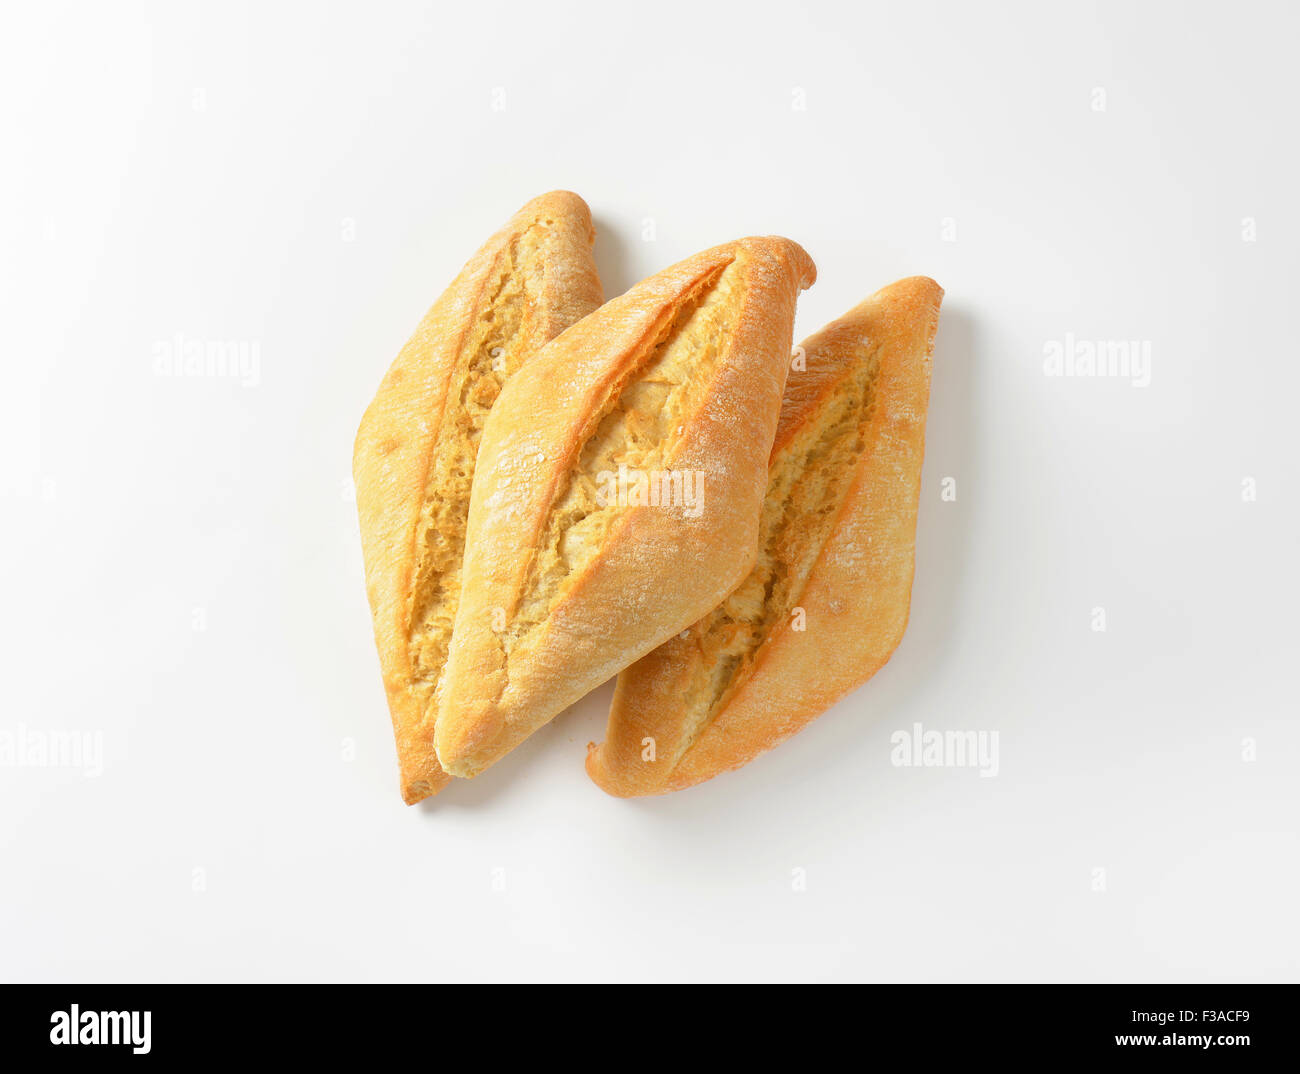 Petits pains au levain blanc avec croûte croustillante Banque D'Images